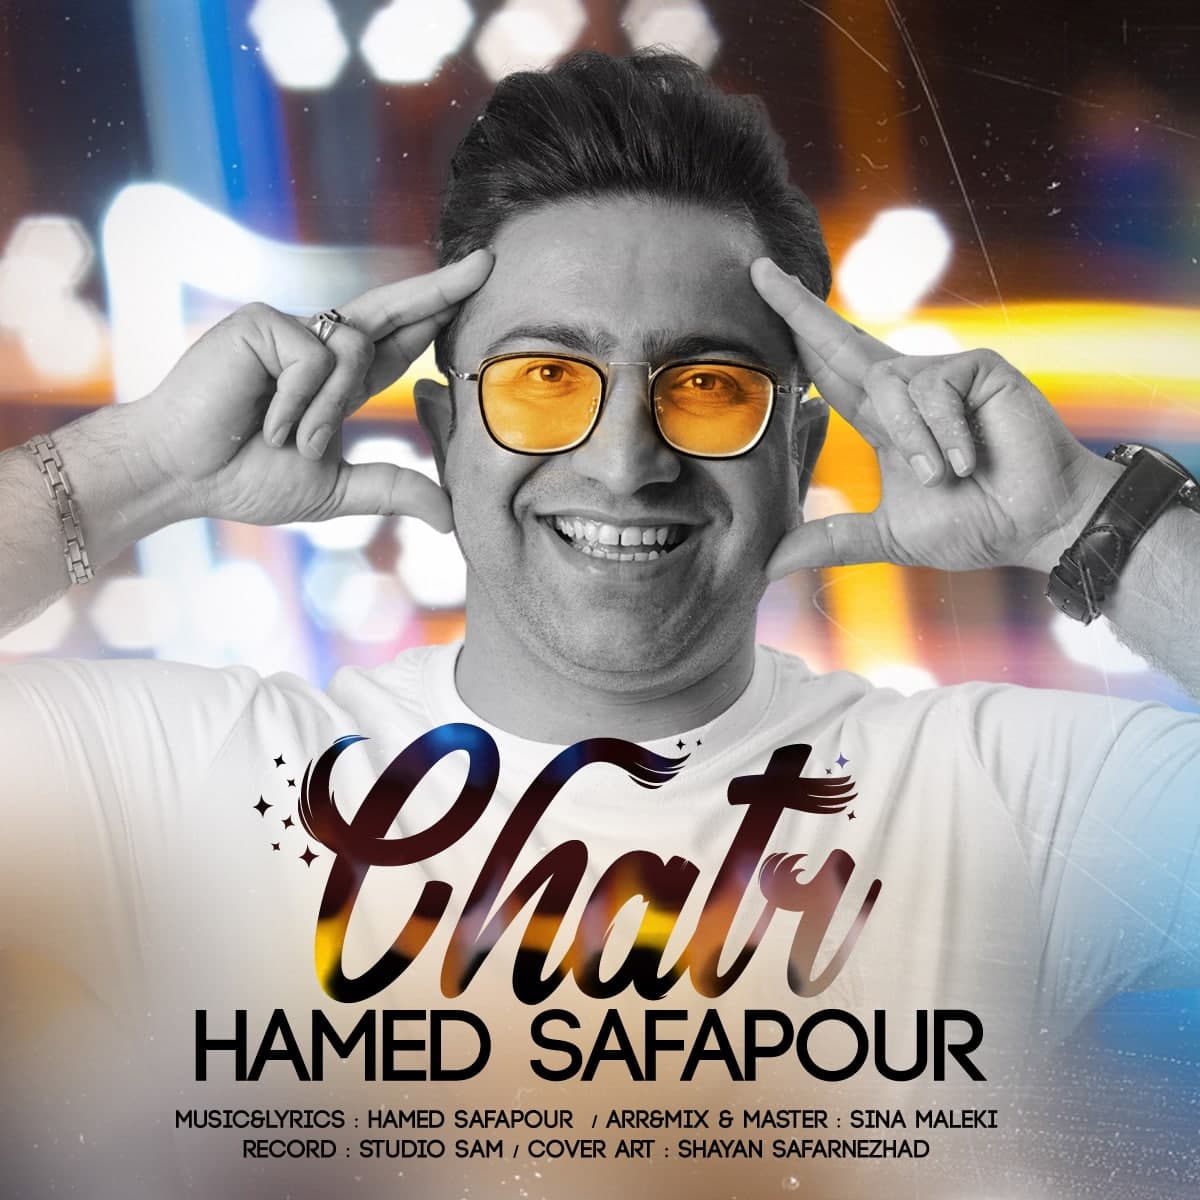 Hamed Safapour – Chatr